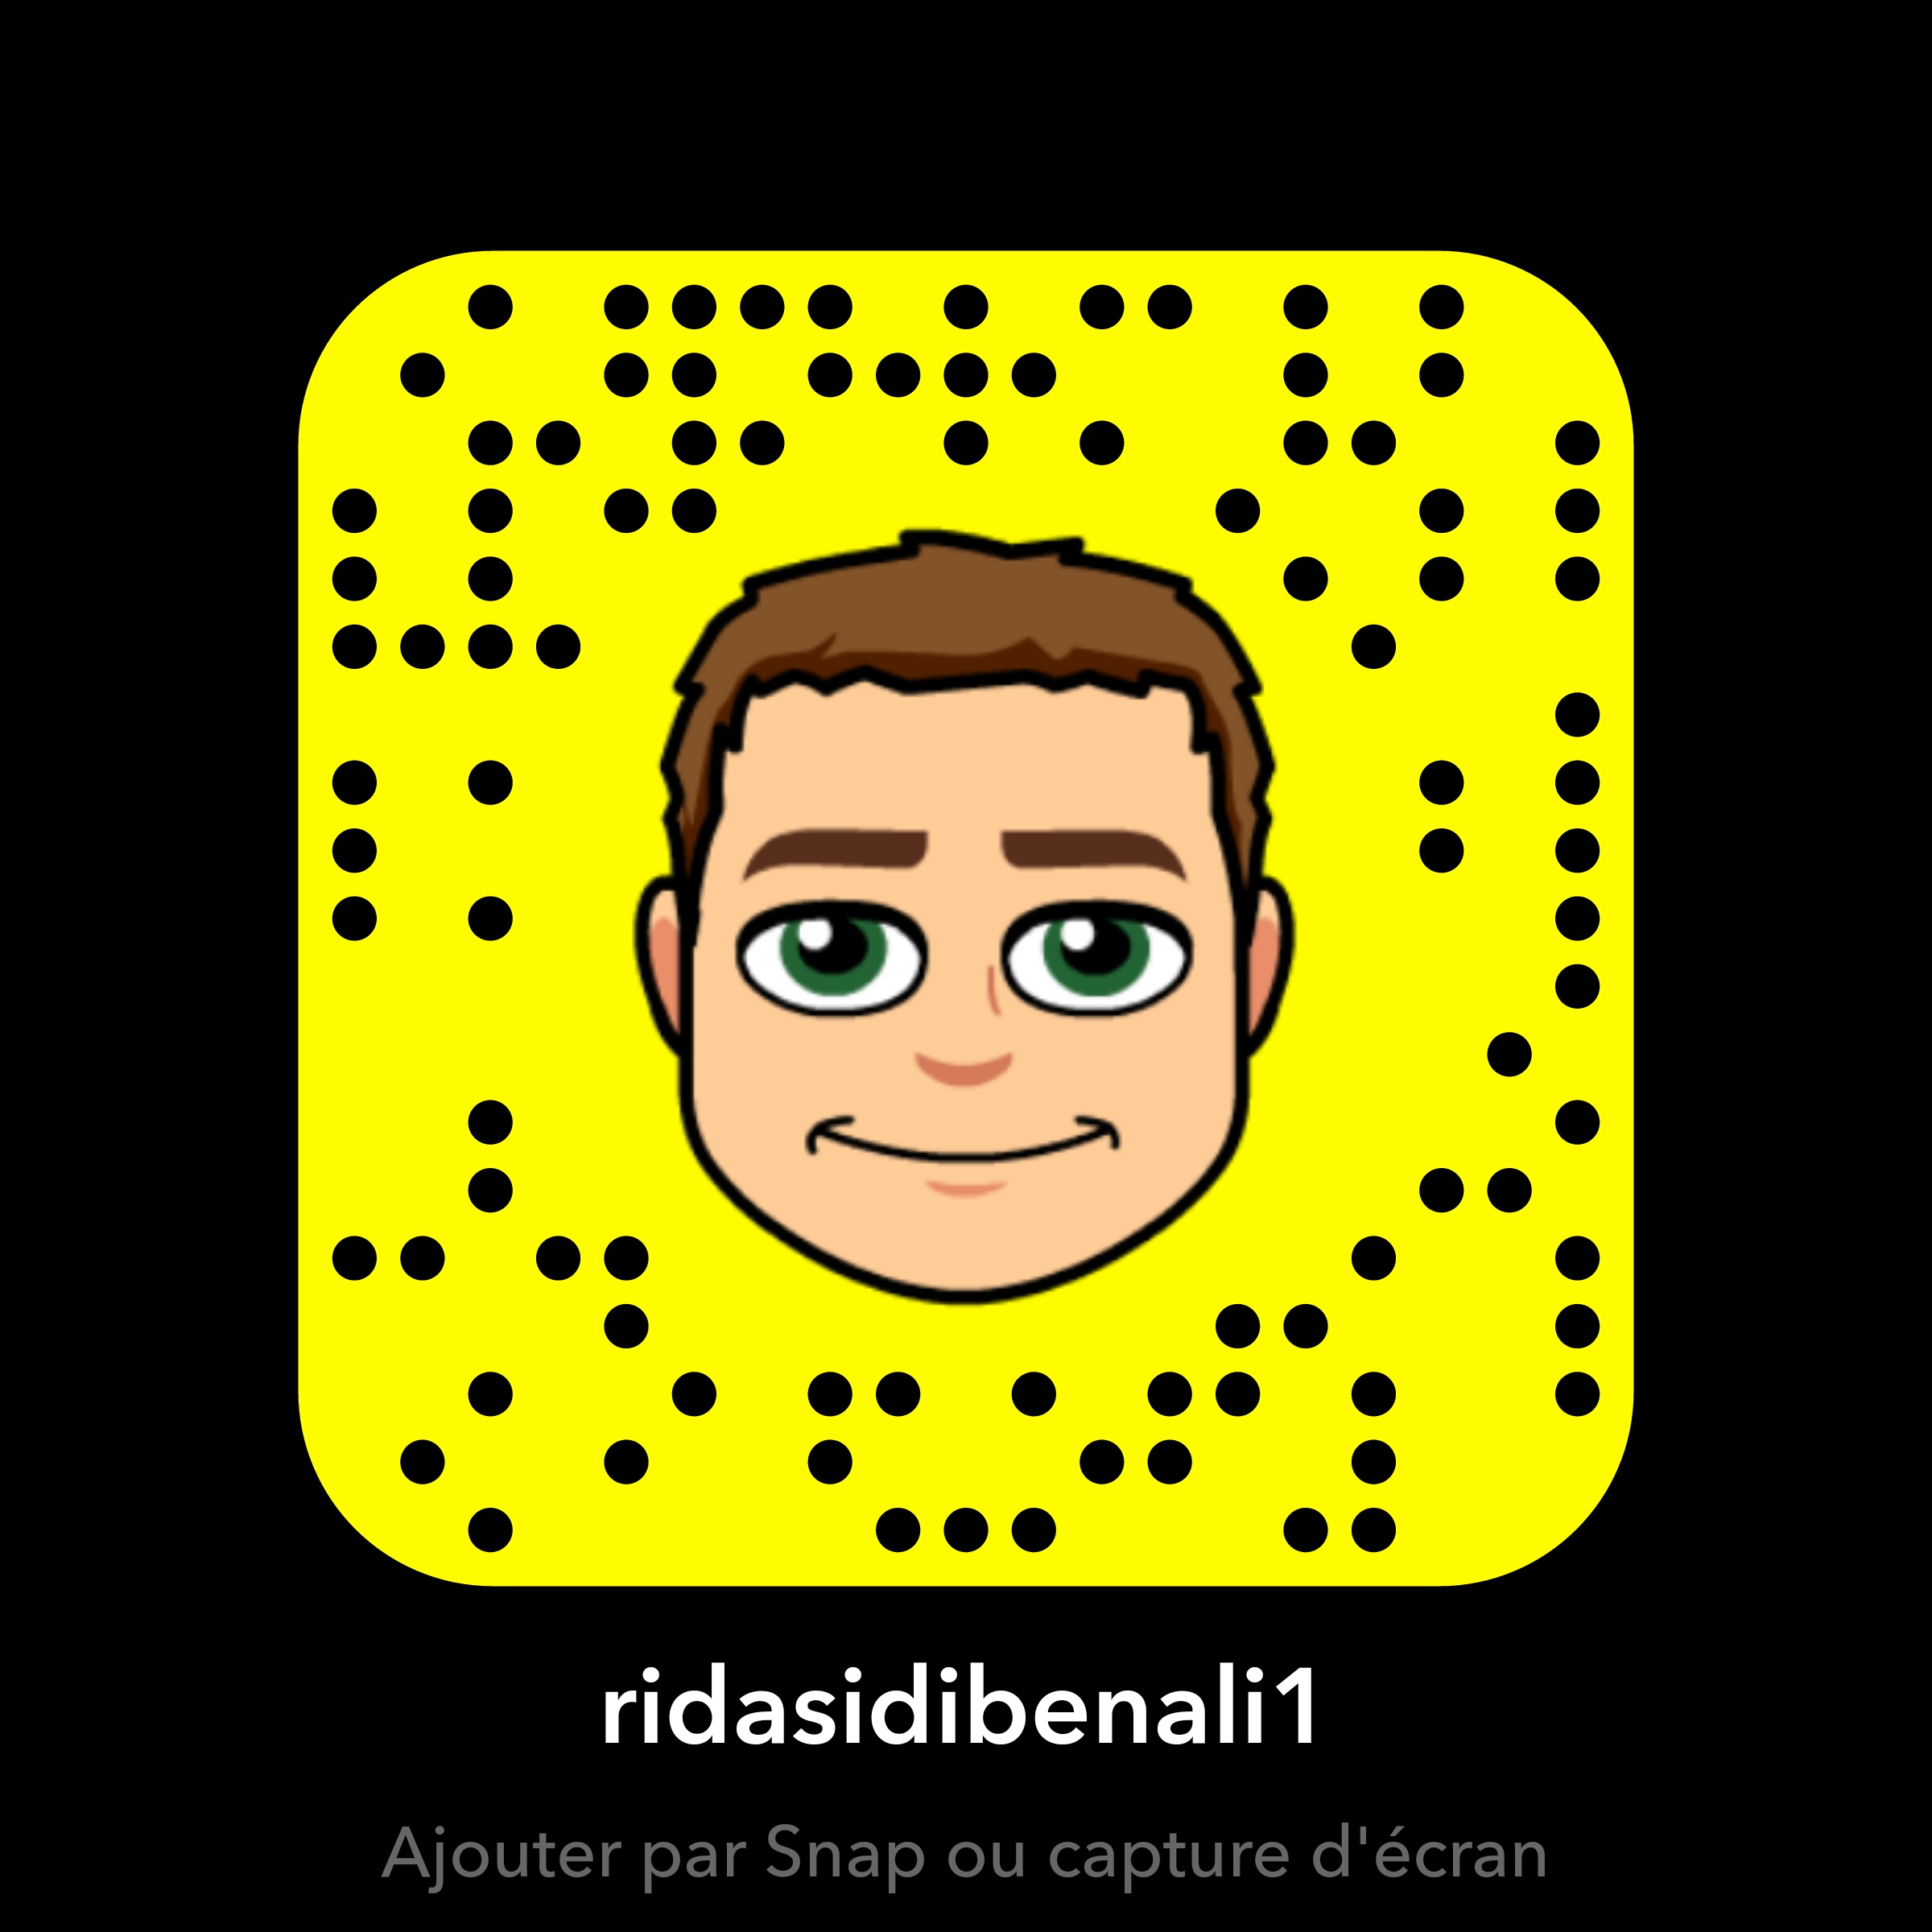 Rida Si Обои Called Rida Sidi Ben Ali Snapchat - Random Snapchat Codes , HD Wallpaper & Backgrounds